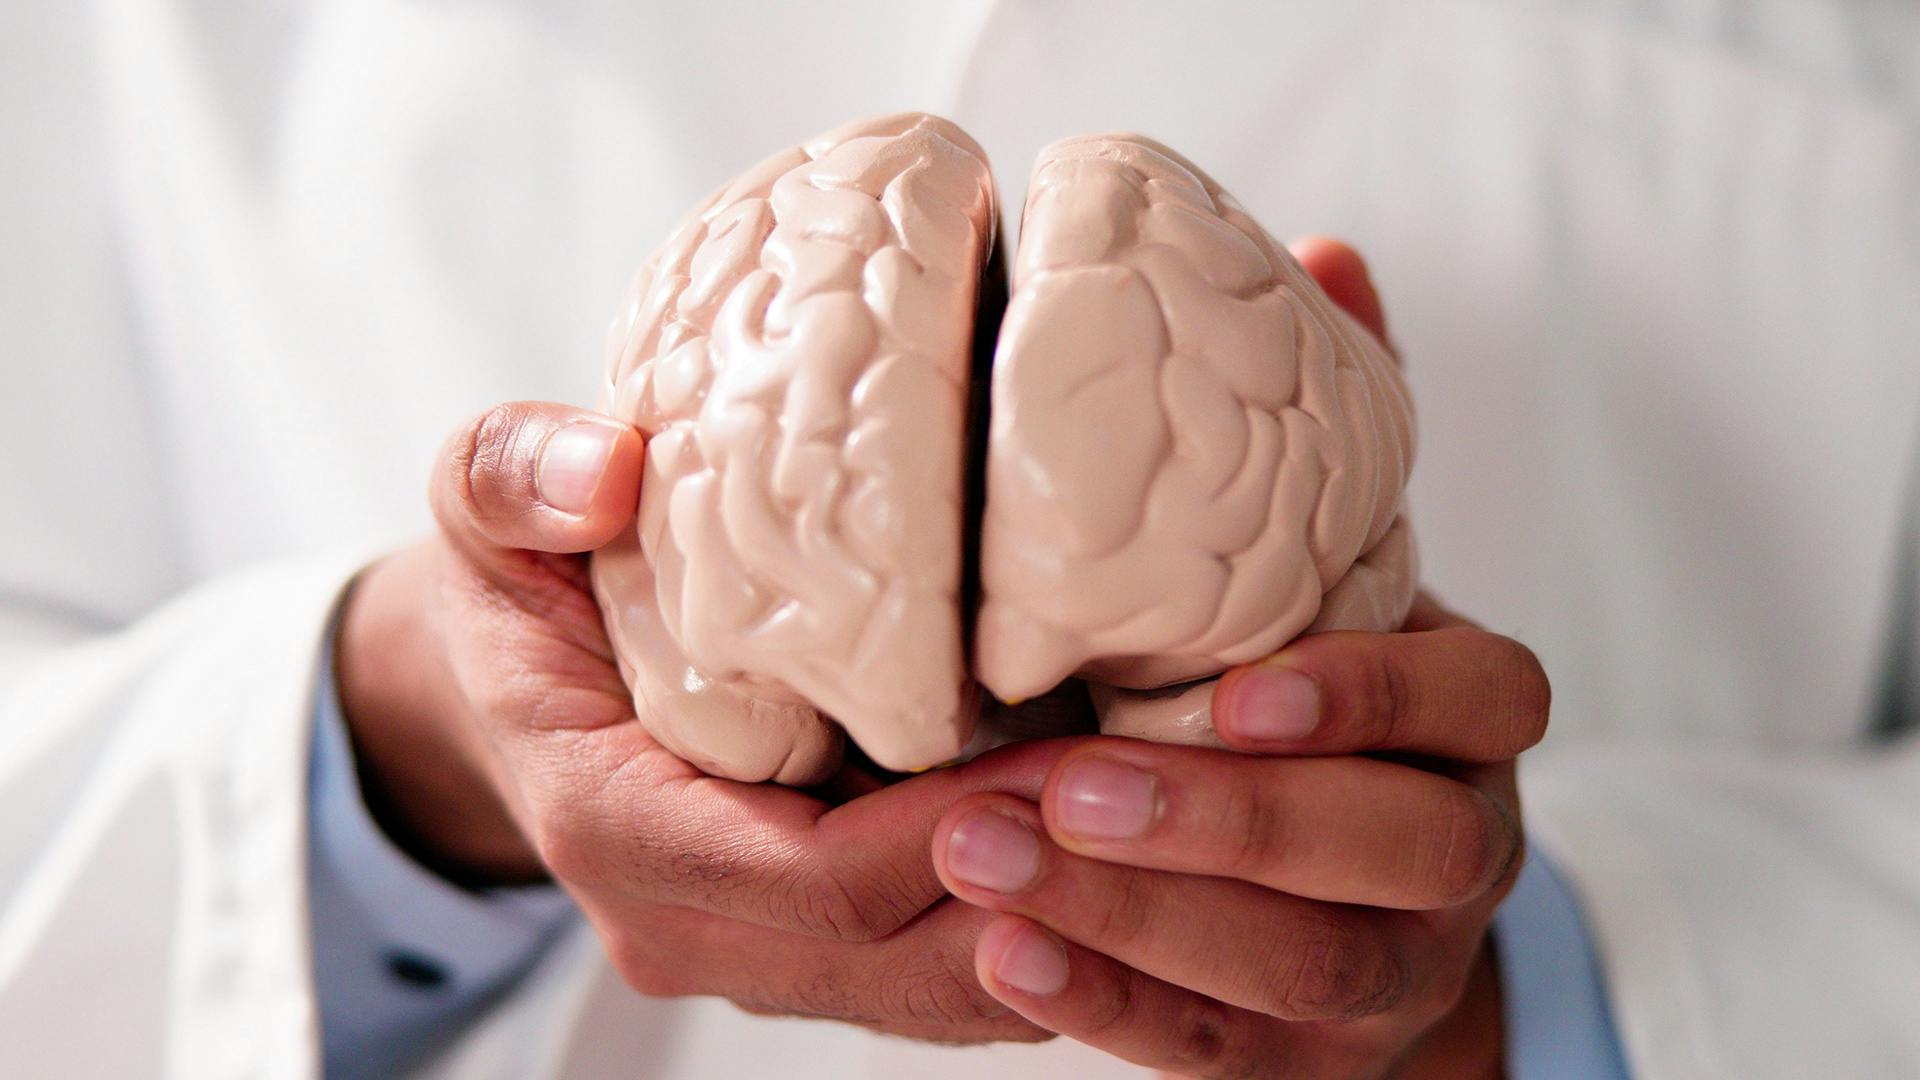 Hands holding model of brain